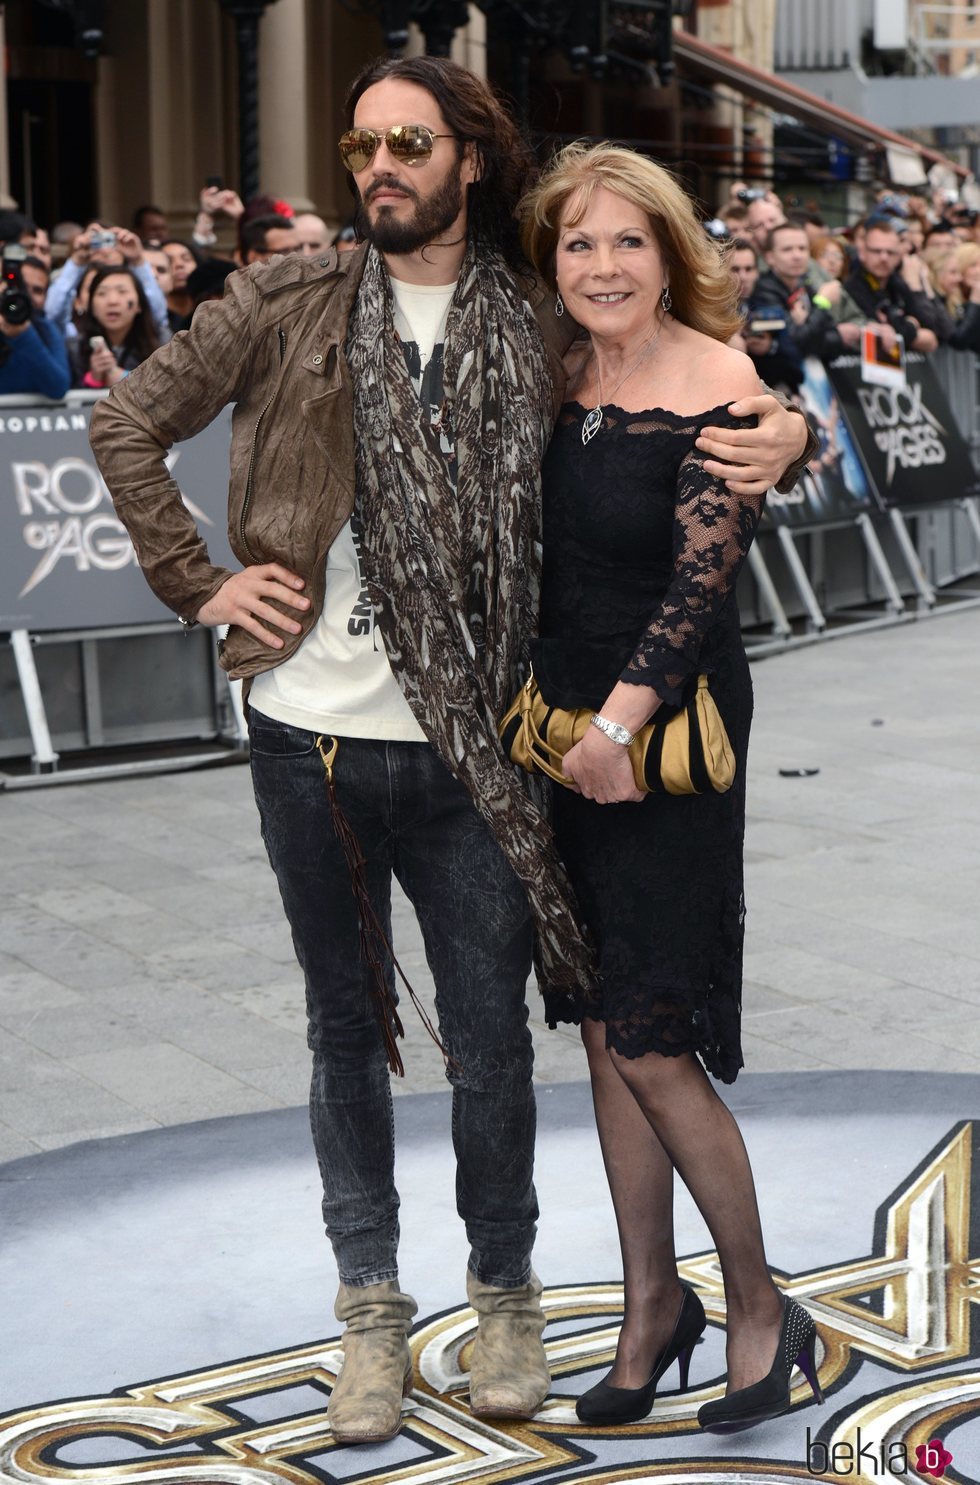 Russell Brand junto a su madre, Barbara Brand